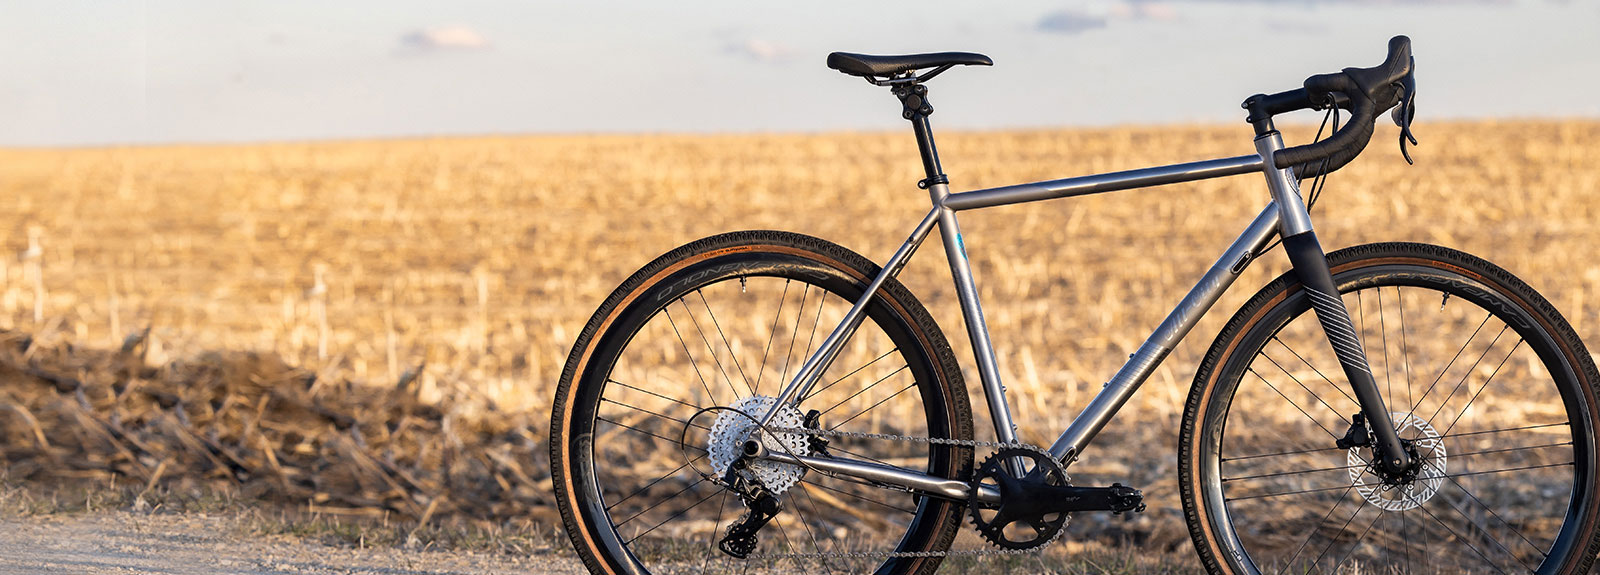 All-City Cosmic Stallion Titanium Frameset built as custom bike on gravel road next to harvested corn field in fall